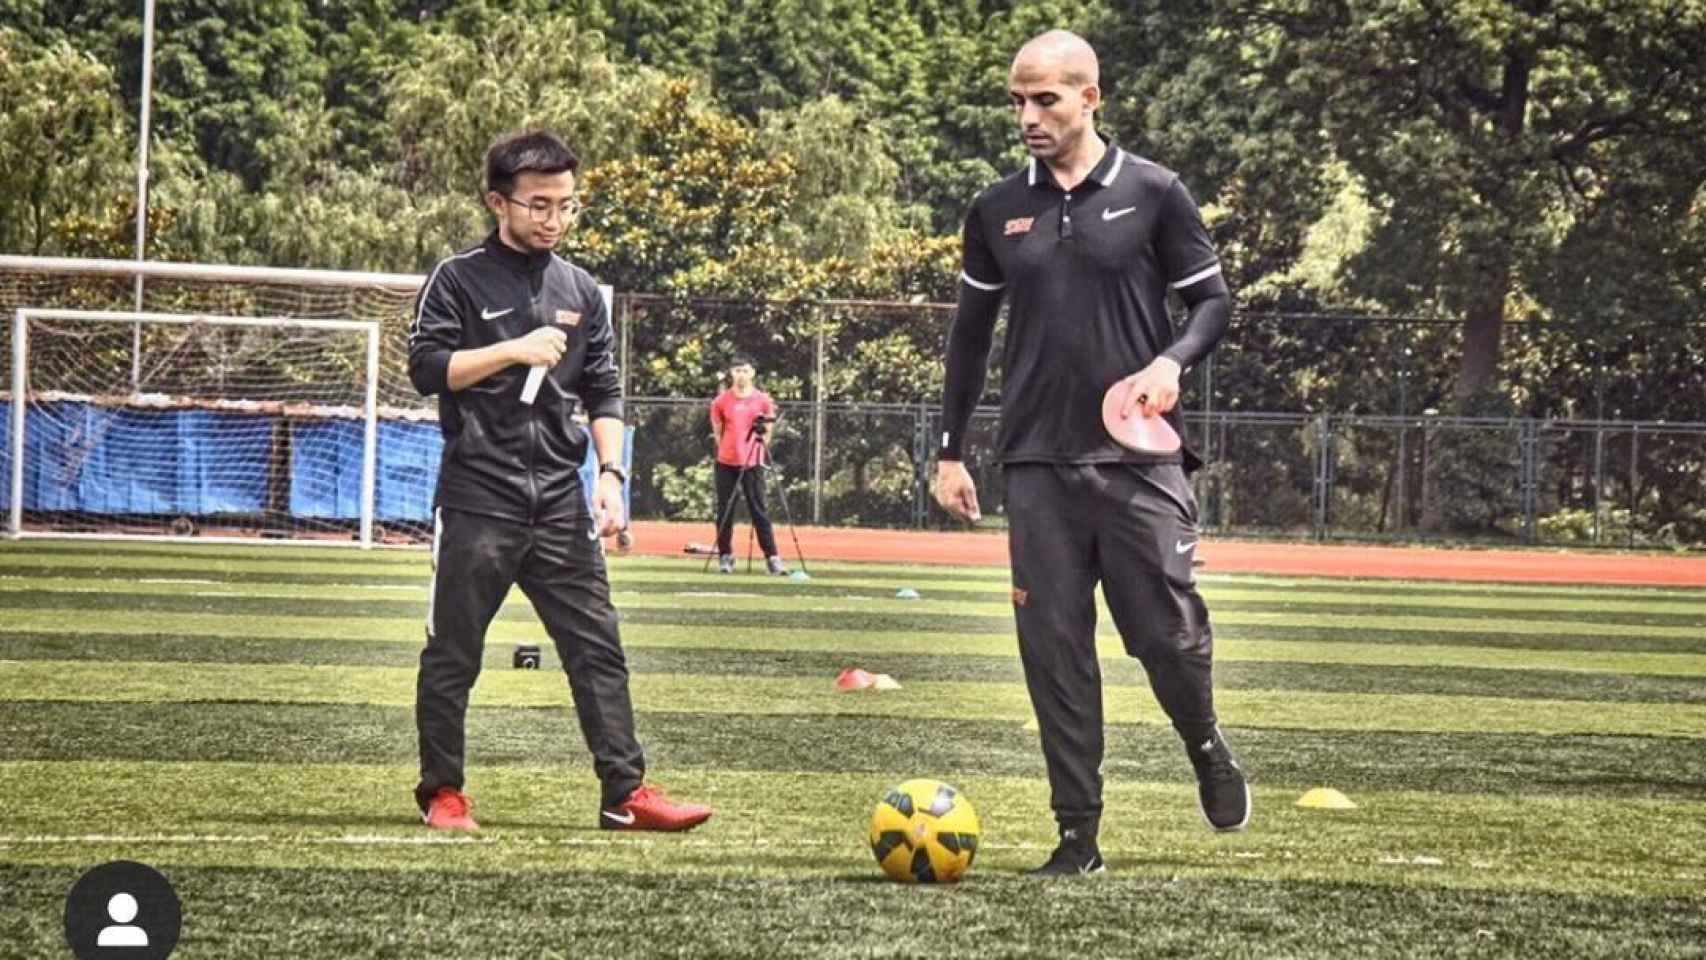 Jesús Camacho formando entrenadores y profesores de educación física en China